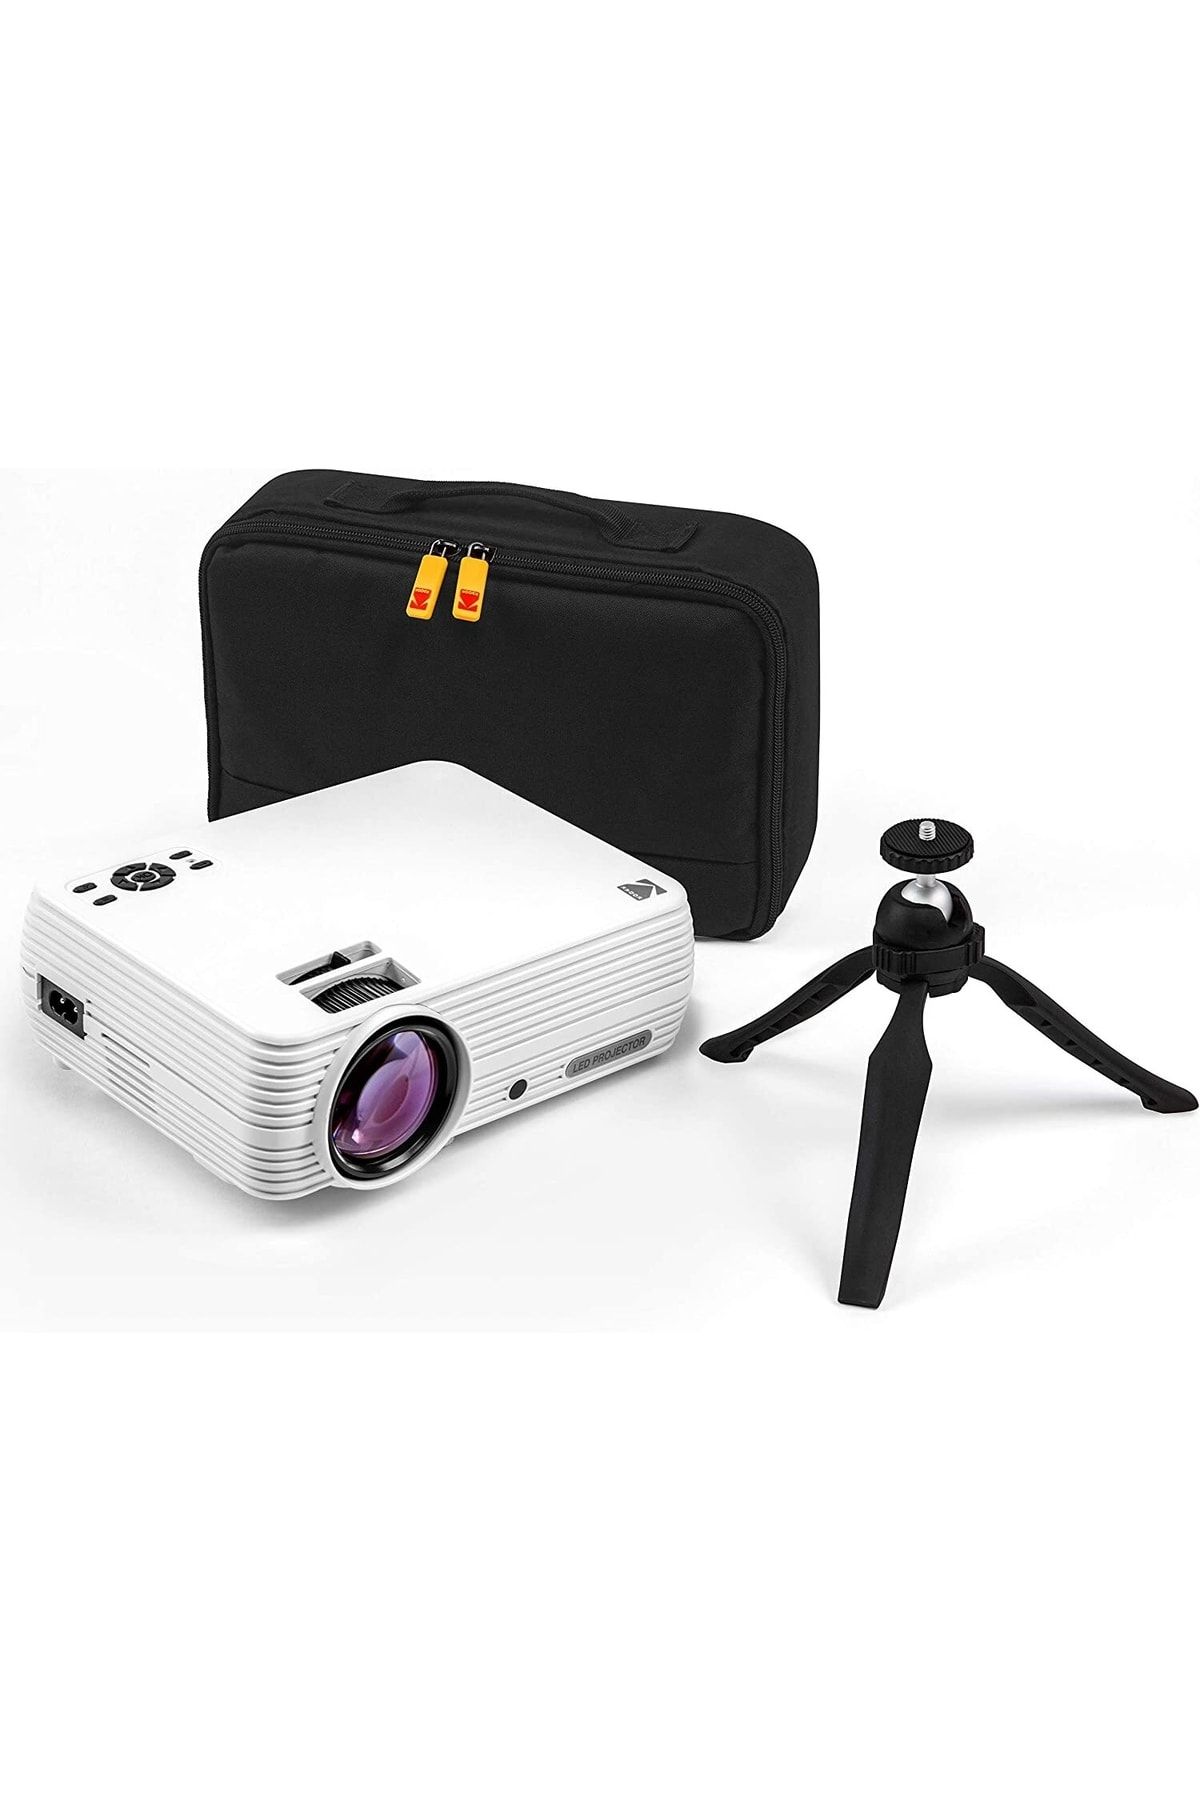 Kodak Tripodlu Ev Projektörü (MAX 1080P HD), Kasa Dahil / Kompakt, 720p Doğal Çözünürlük X4